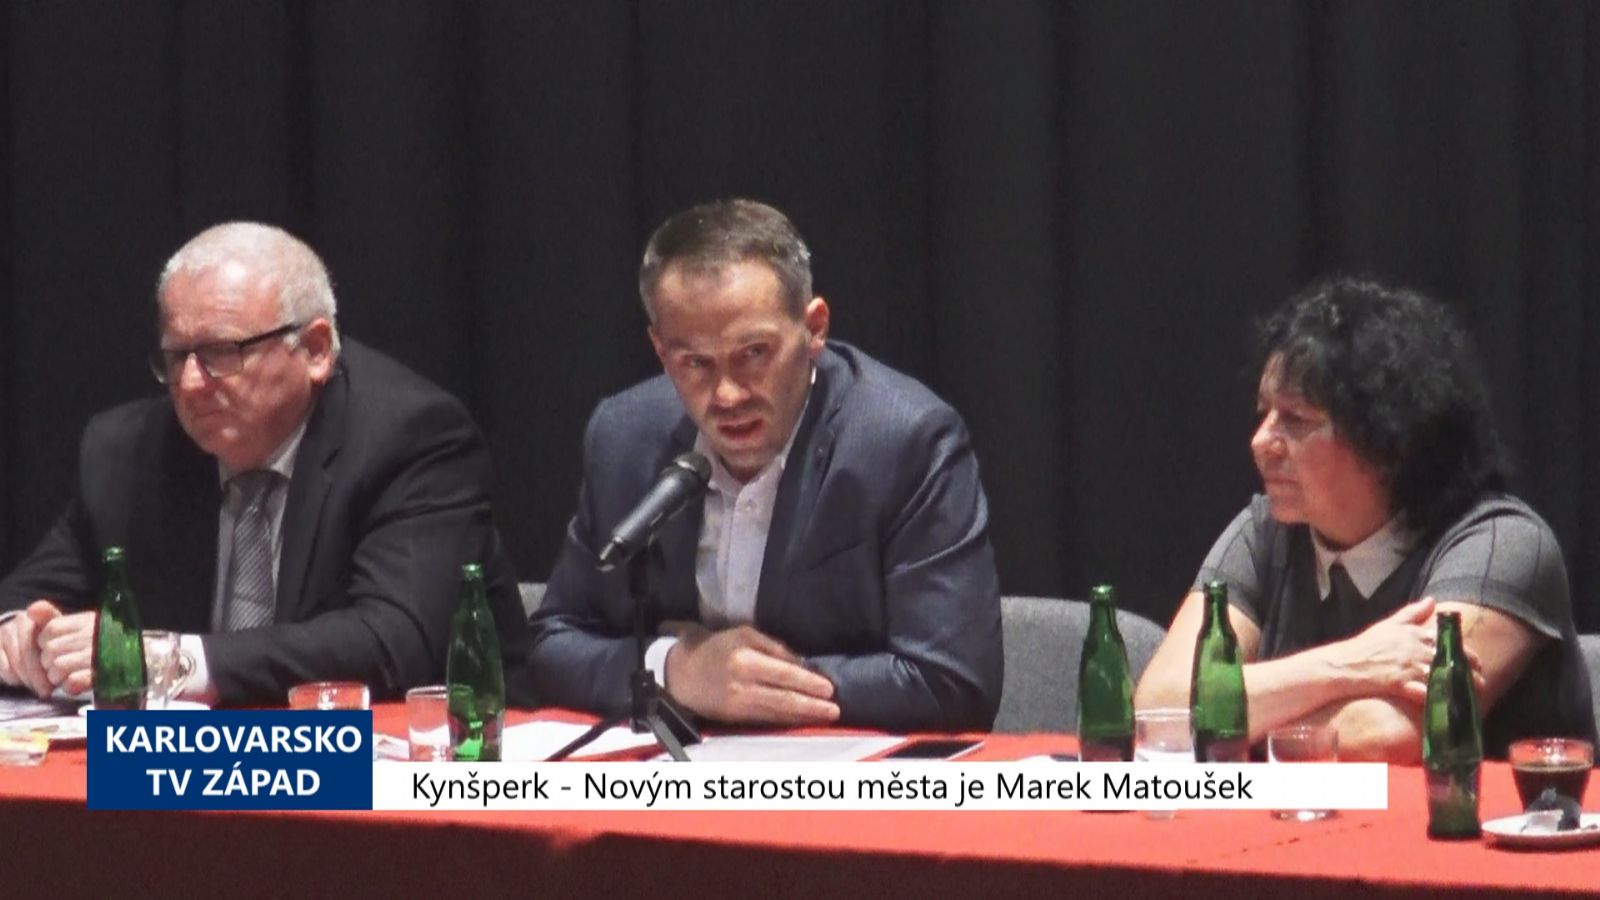 Kynšperk: Novým starostou města je Marek Matoušek (TV Západ)